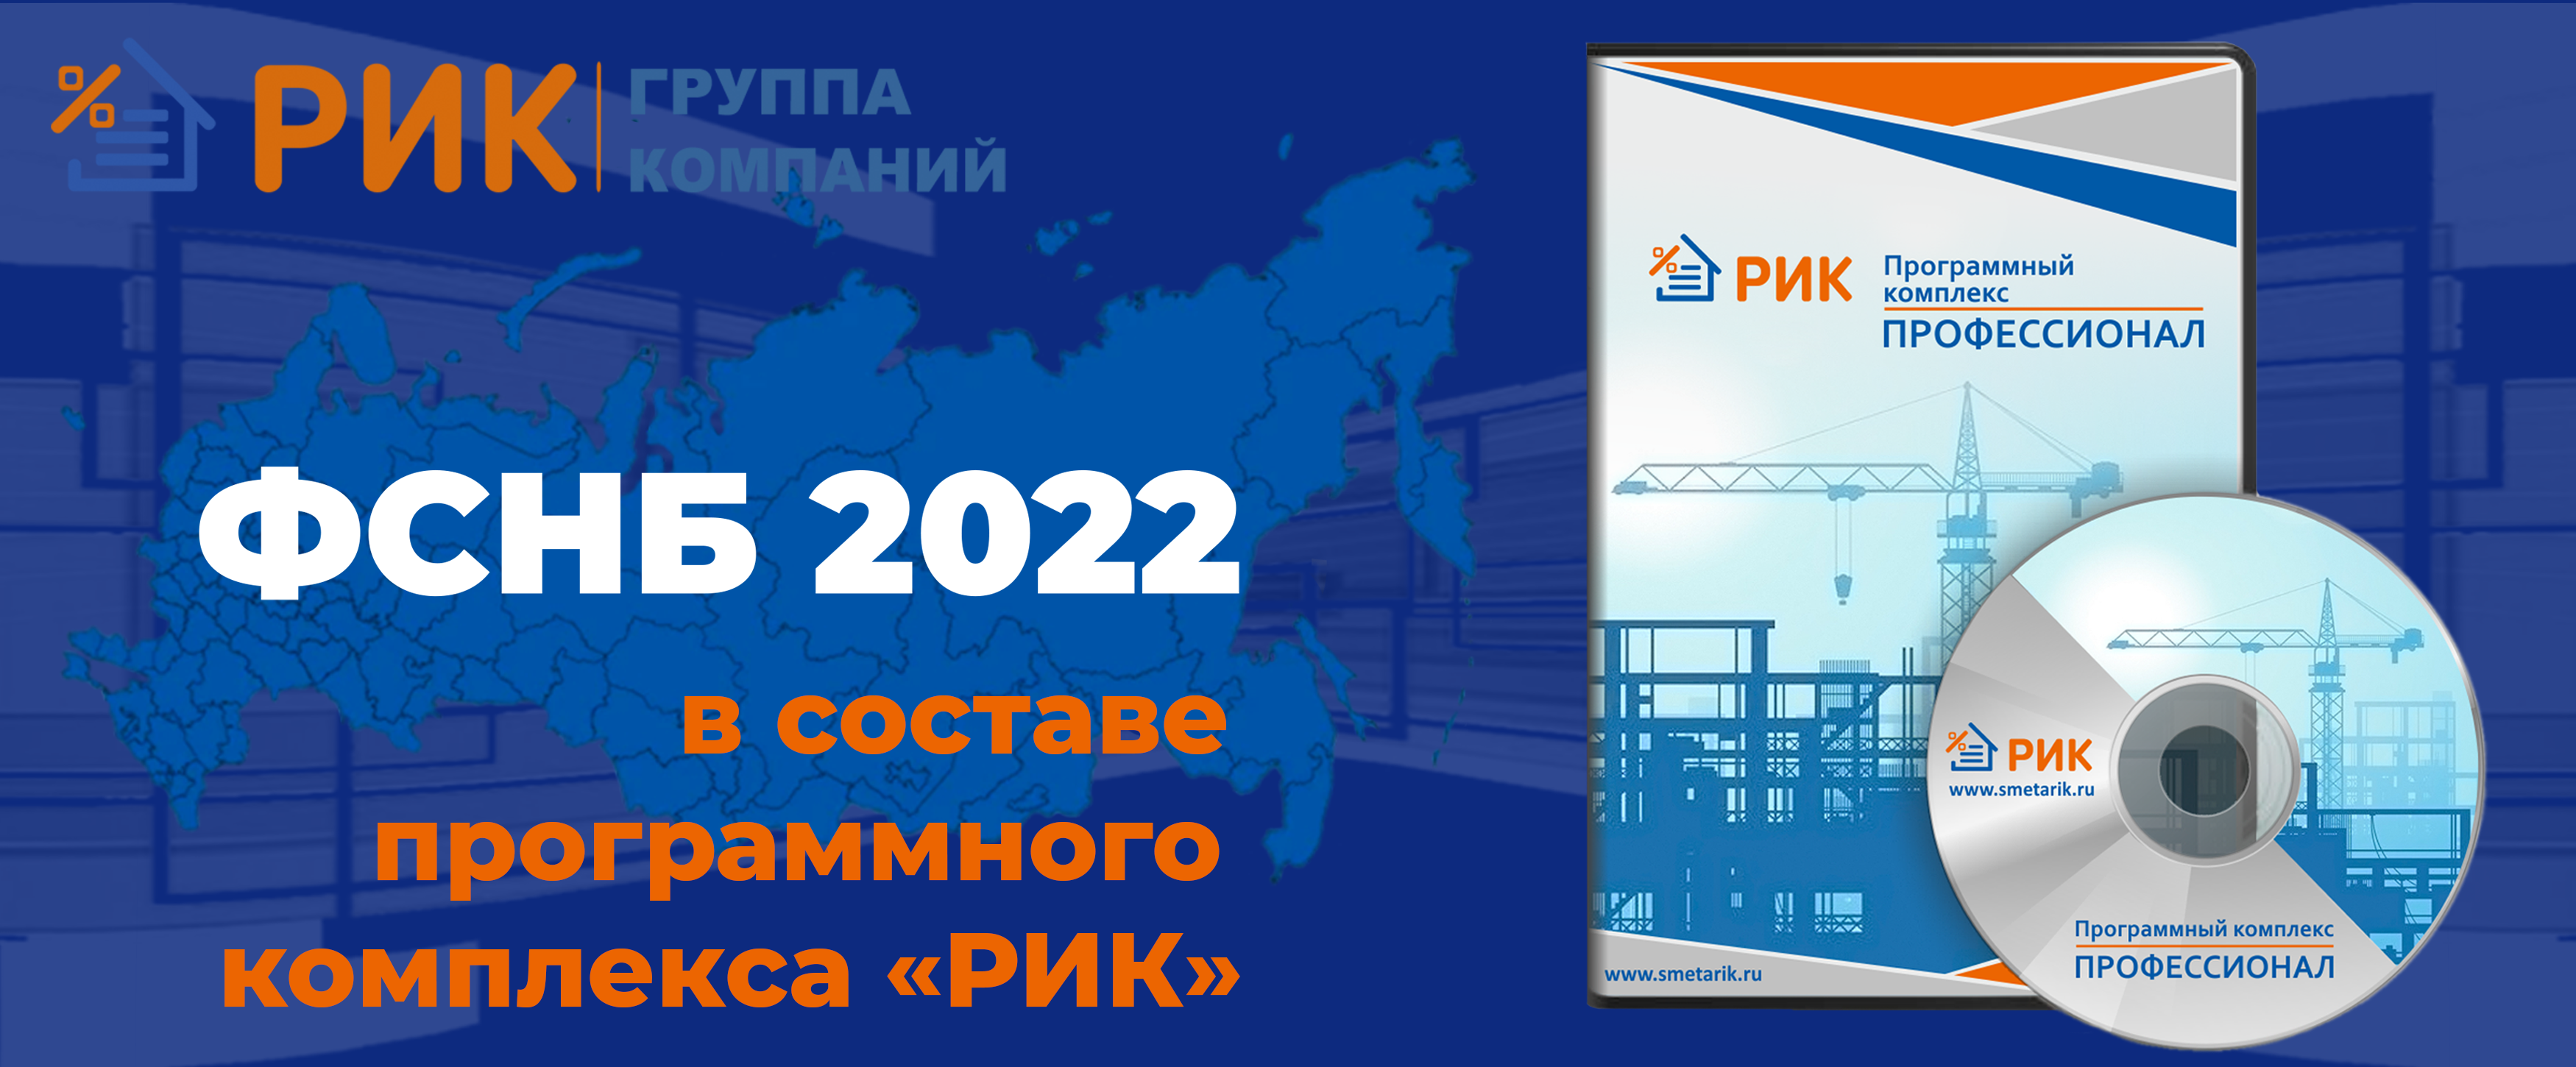 Сообщаем о поступлении в продажу нового сборника, Дополнения № 6 к ФСНБ-2022 в составе ПК «РИК»